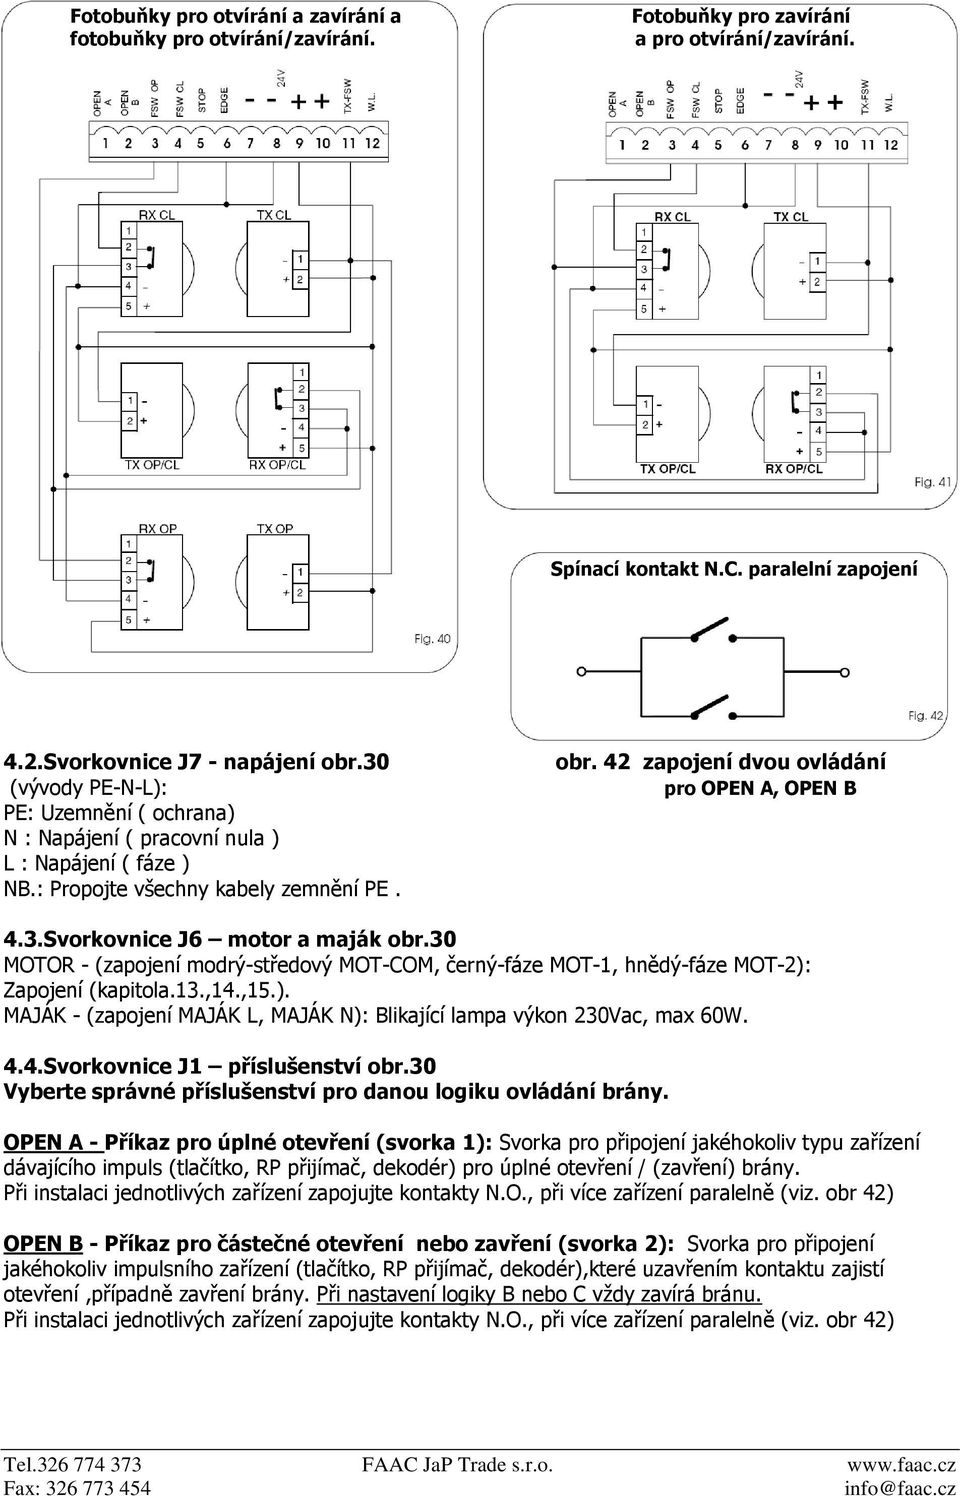 30 MOTOR - (zapojení modrý-středový MOT-COM, černý-fáze MOT-1, hnědý-fáze MOT-2): Zapojení (kapitola.13.,14.,15.). MAJÁK - (zapojení MAJÁK L, MAJÁK N): Blikající lampa výkon 230Vac, max 60W. 4.4.Svorkovnice J1 příslušenství obr.